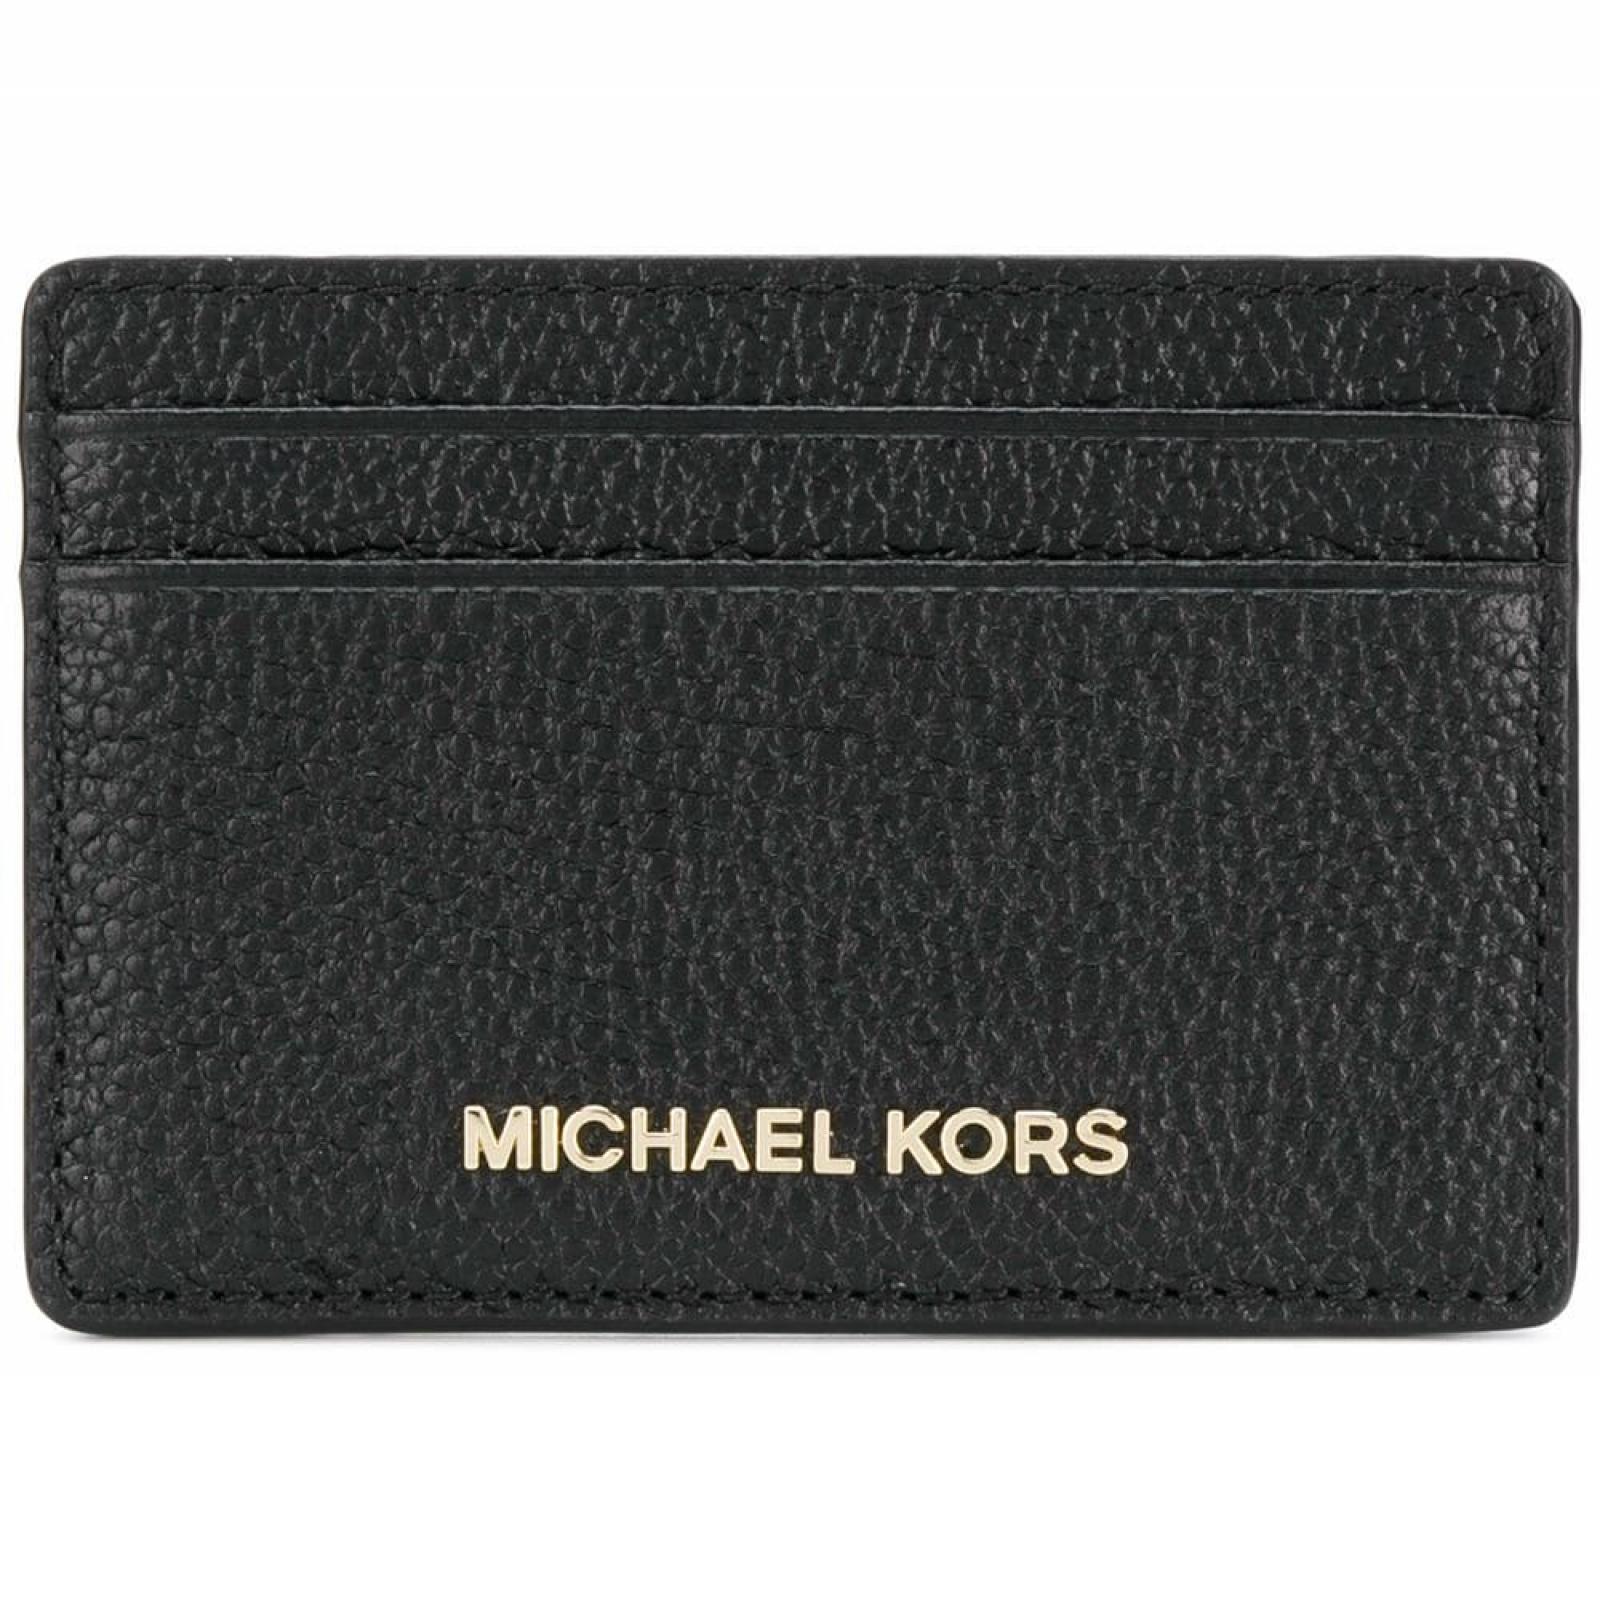 Michael Kors Card Holder Merce in leather - 1